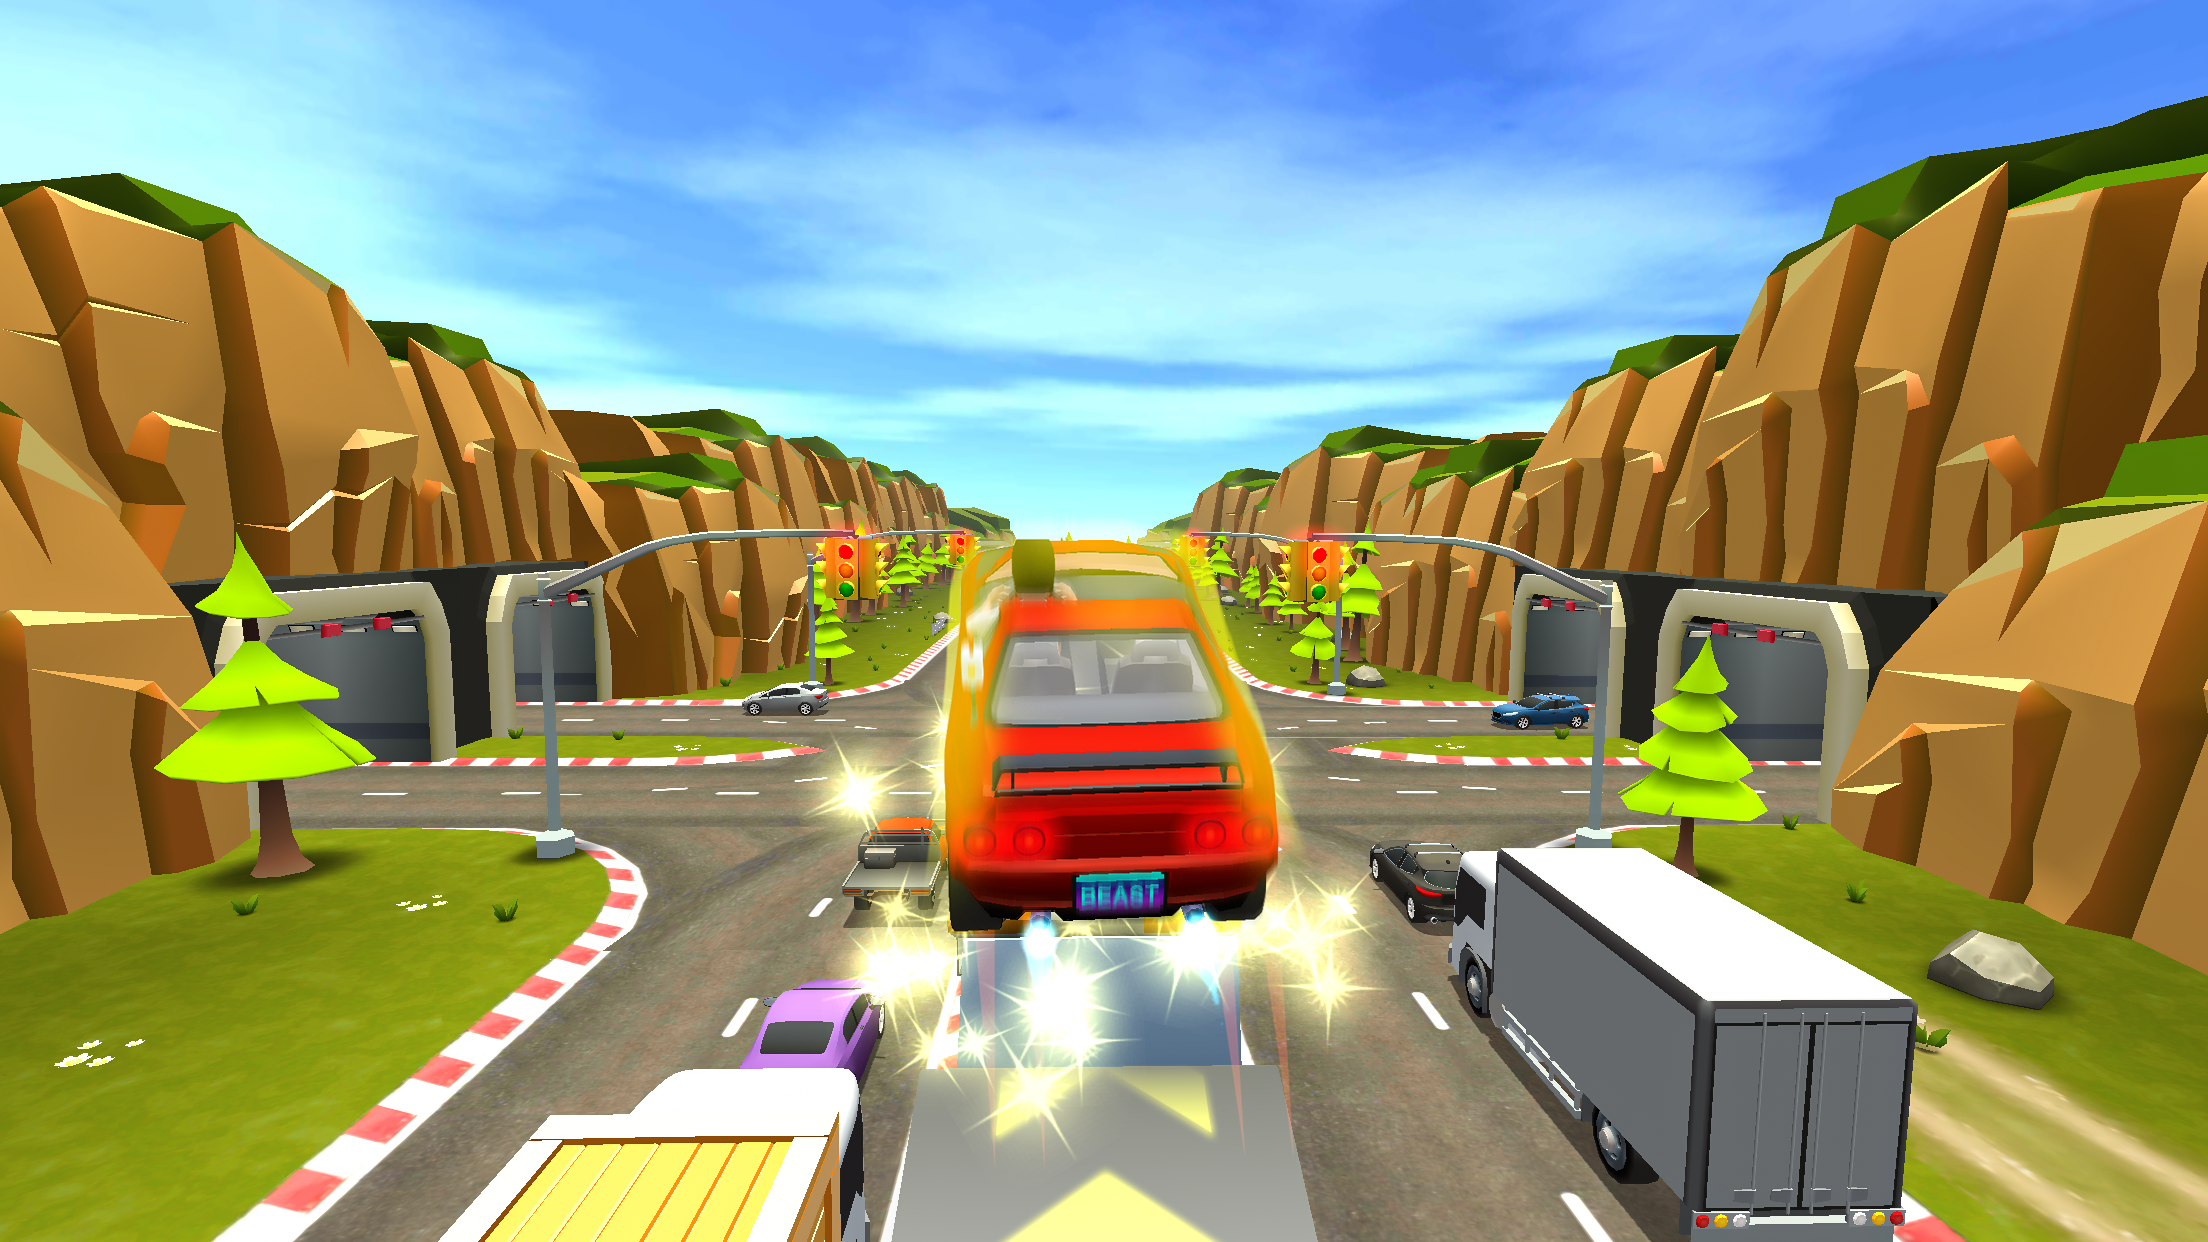 Screenshot 1 of Phanh hỏng 2: Trò chơi đụng xe 6.9